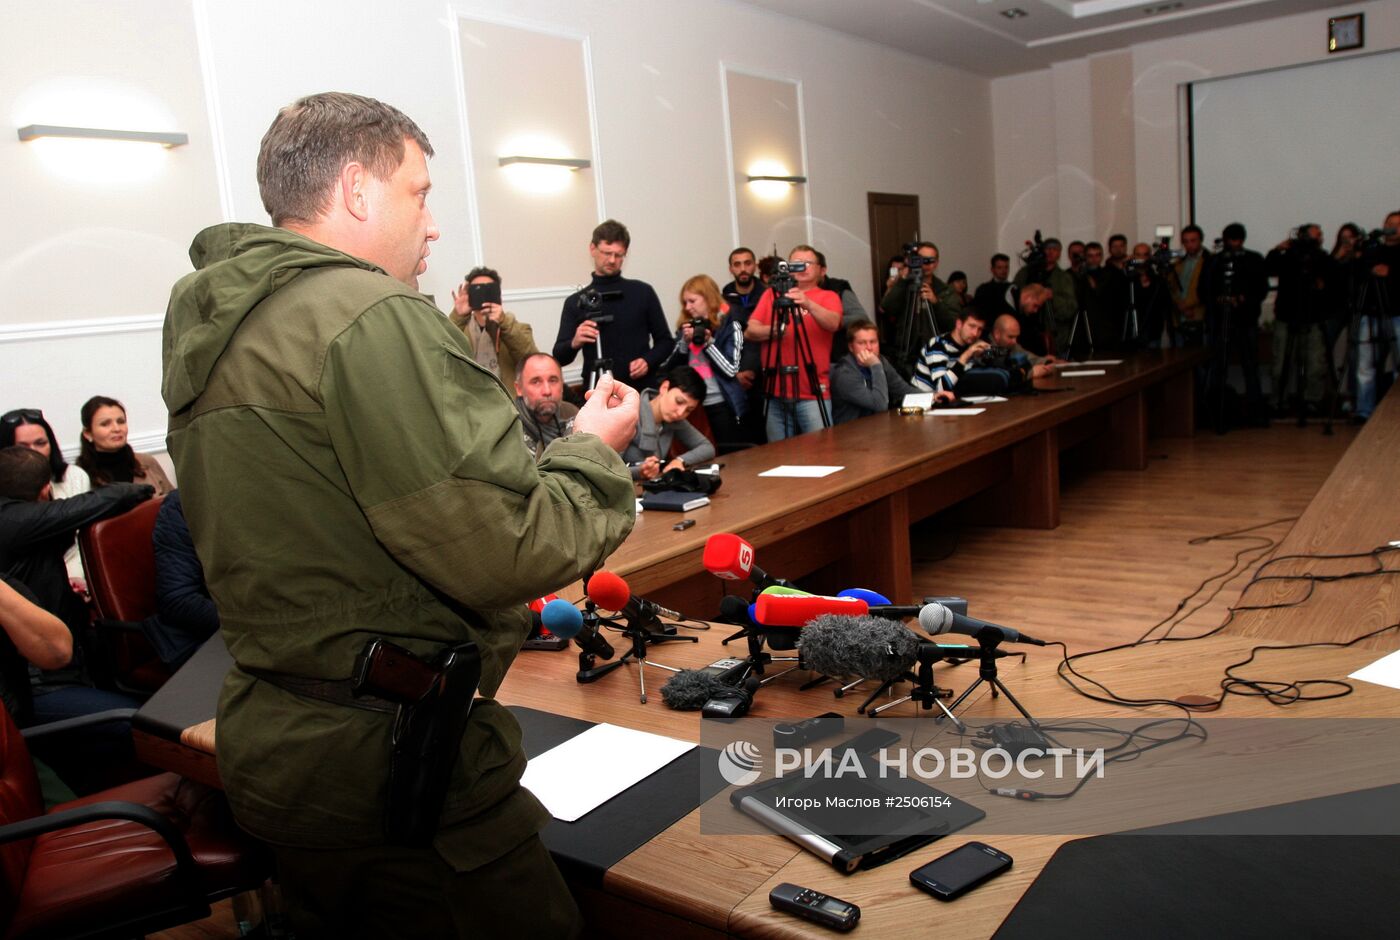 Премьер-министр ДНР Александр Захарченко опроверг слухи о своей отставке